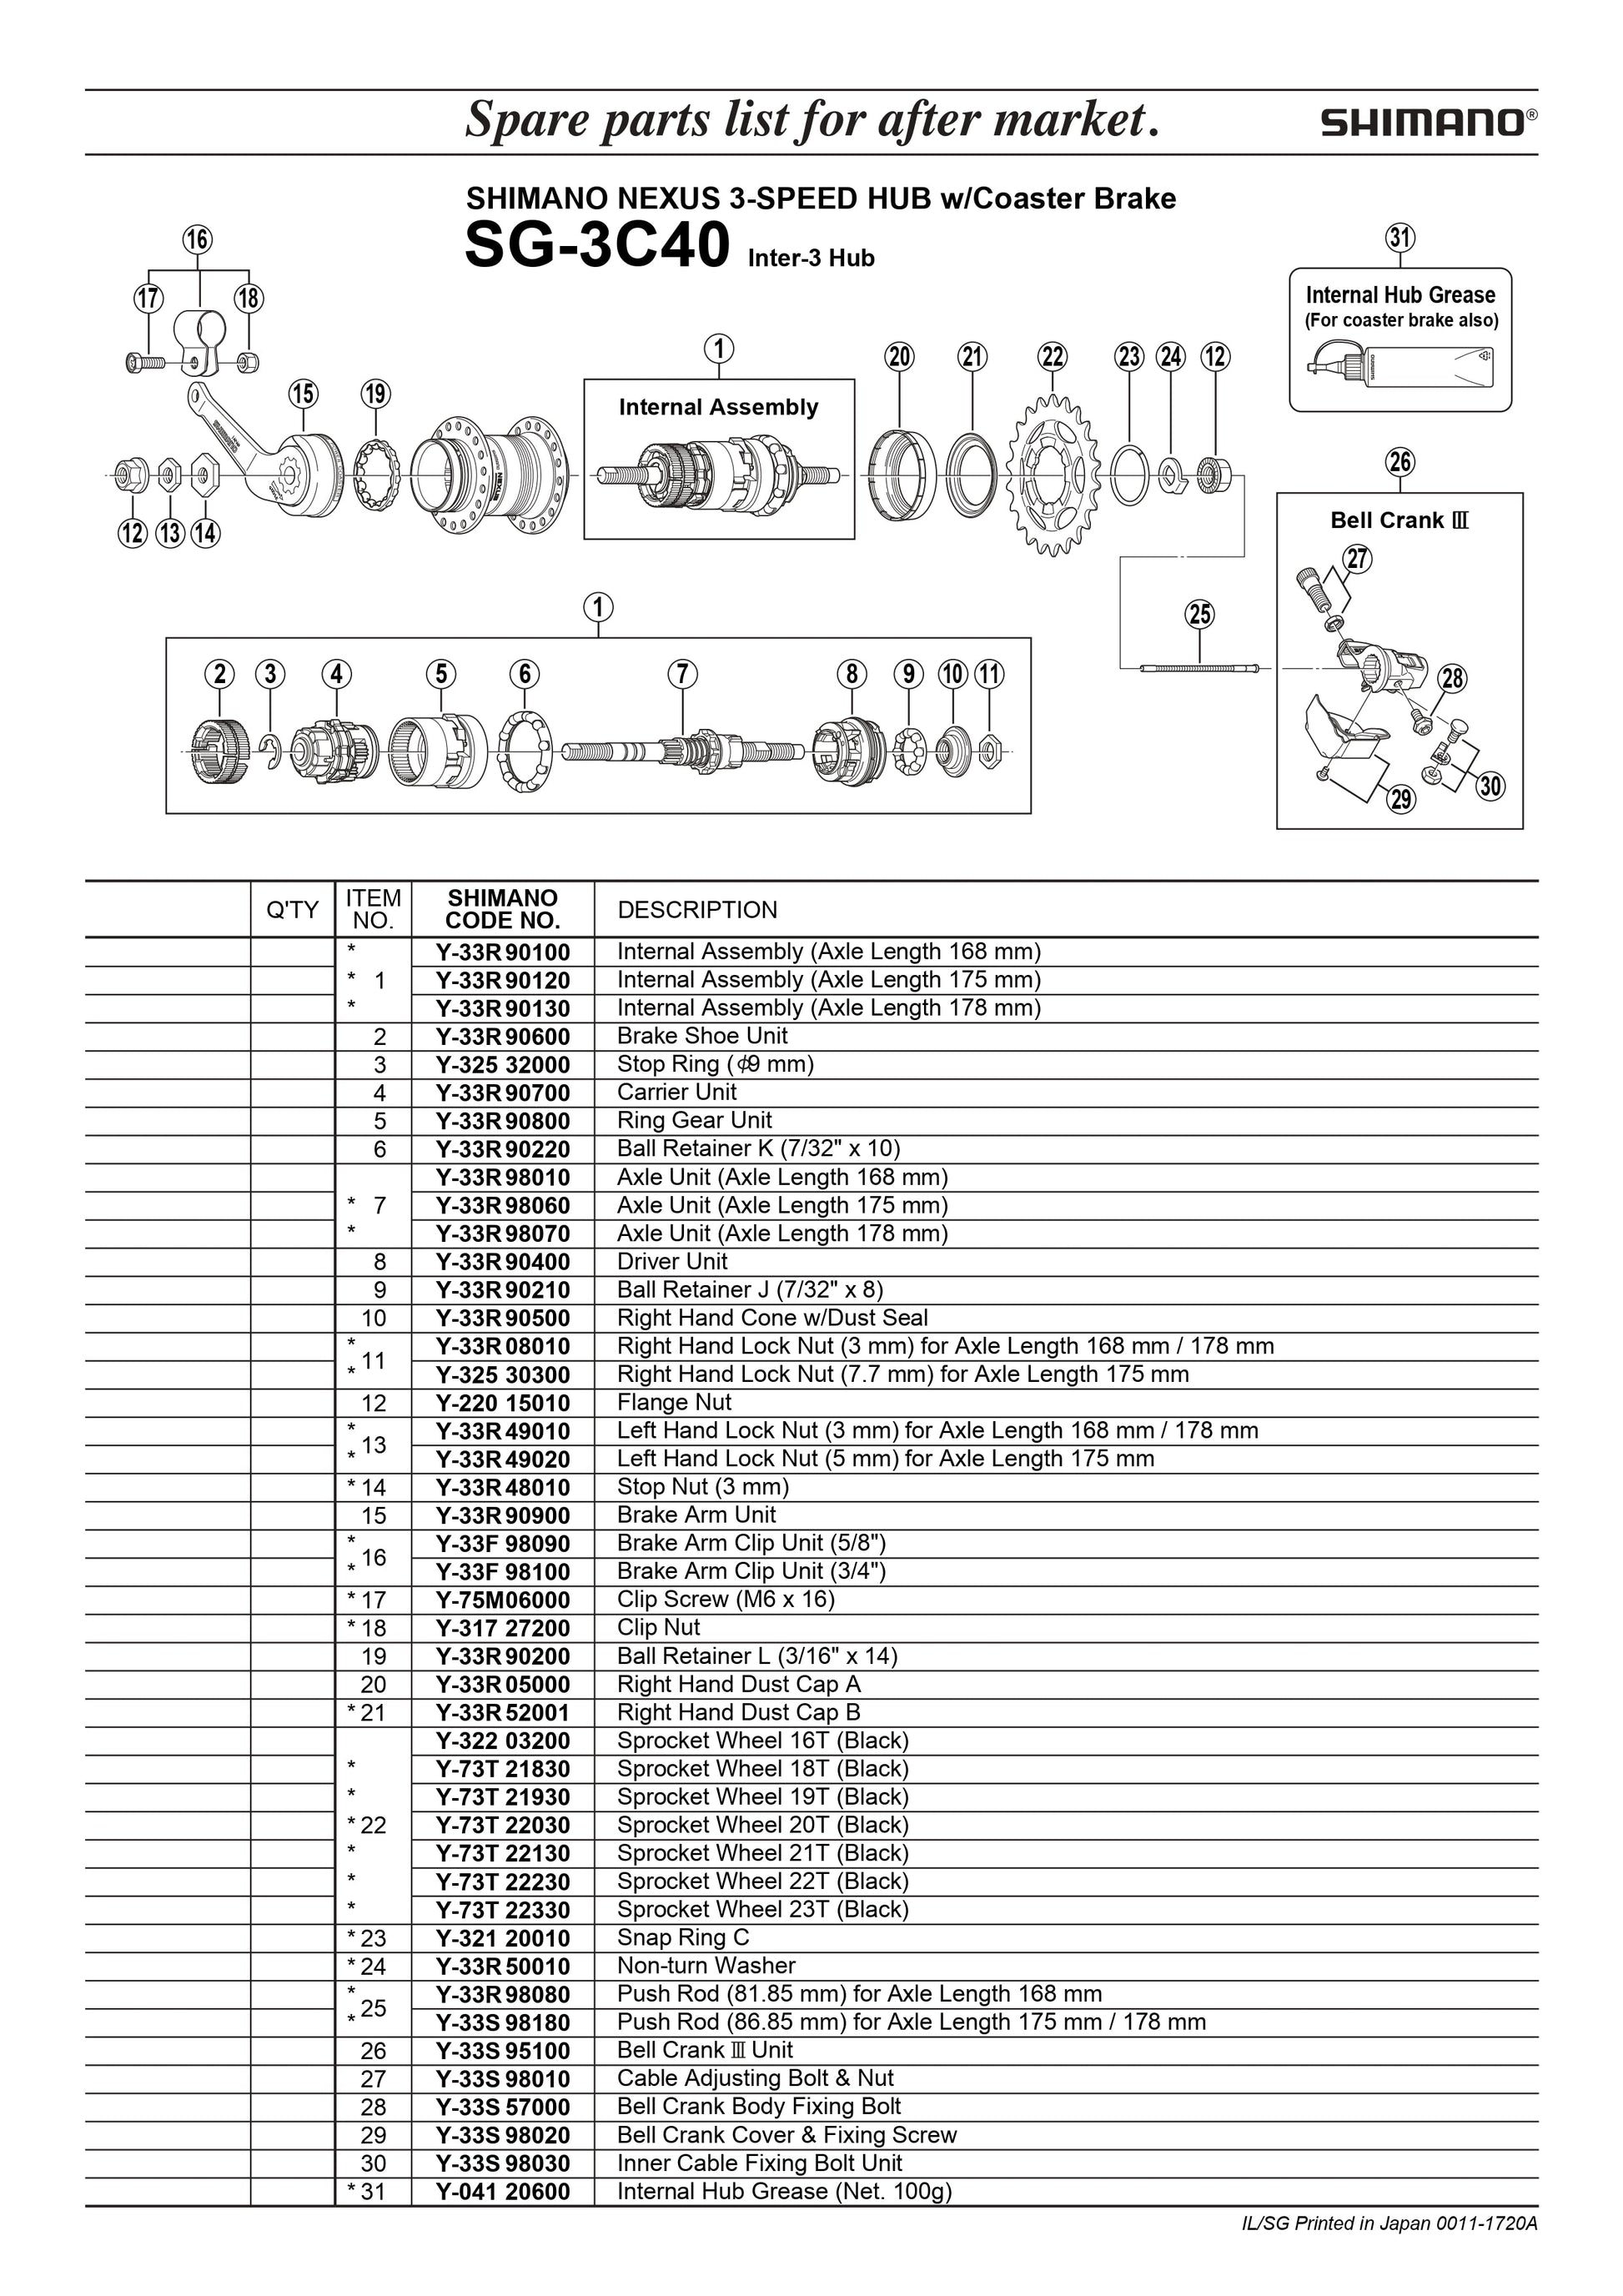 SHIMANO Nexus SG-3C40 Hub 3-Speed Ball Retainer J - 7/32" x 8 - Y33R90210-Pit Crew Cycles